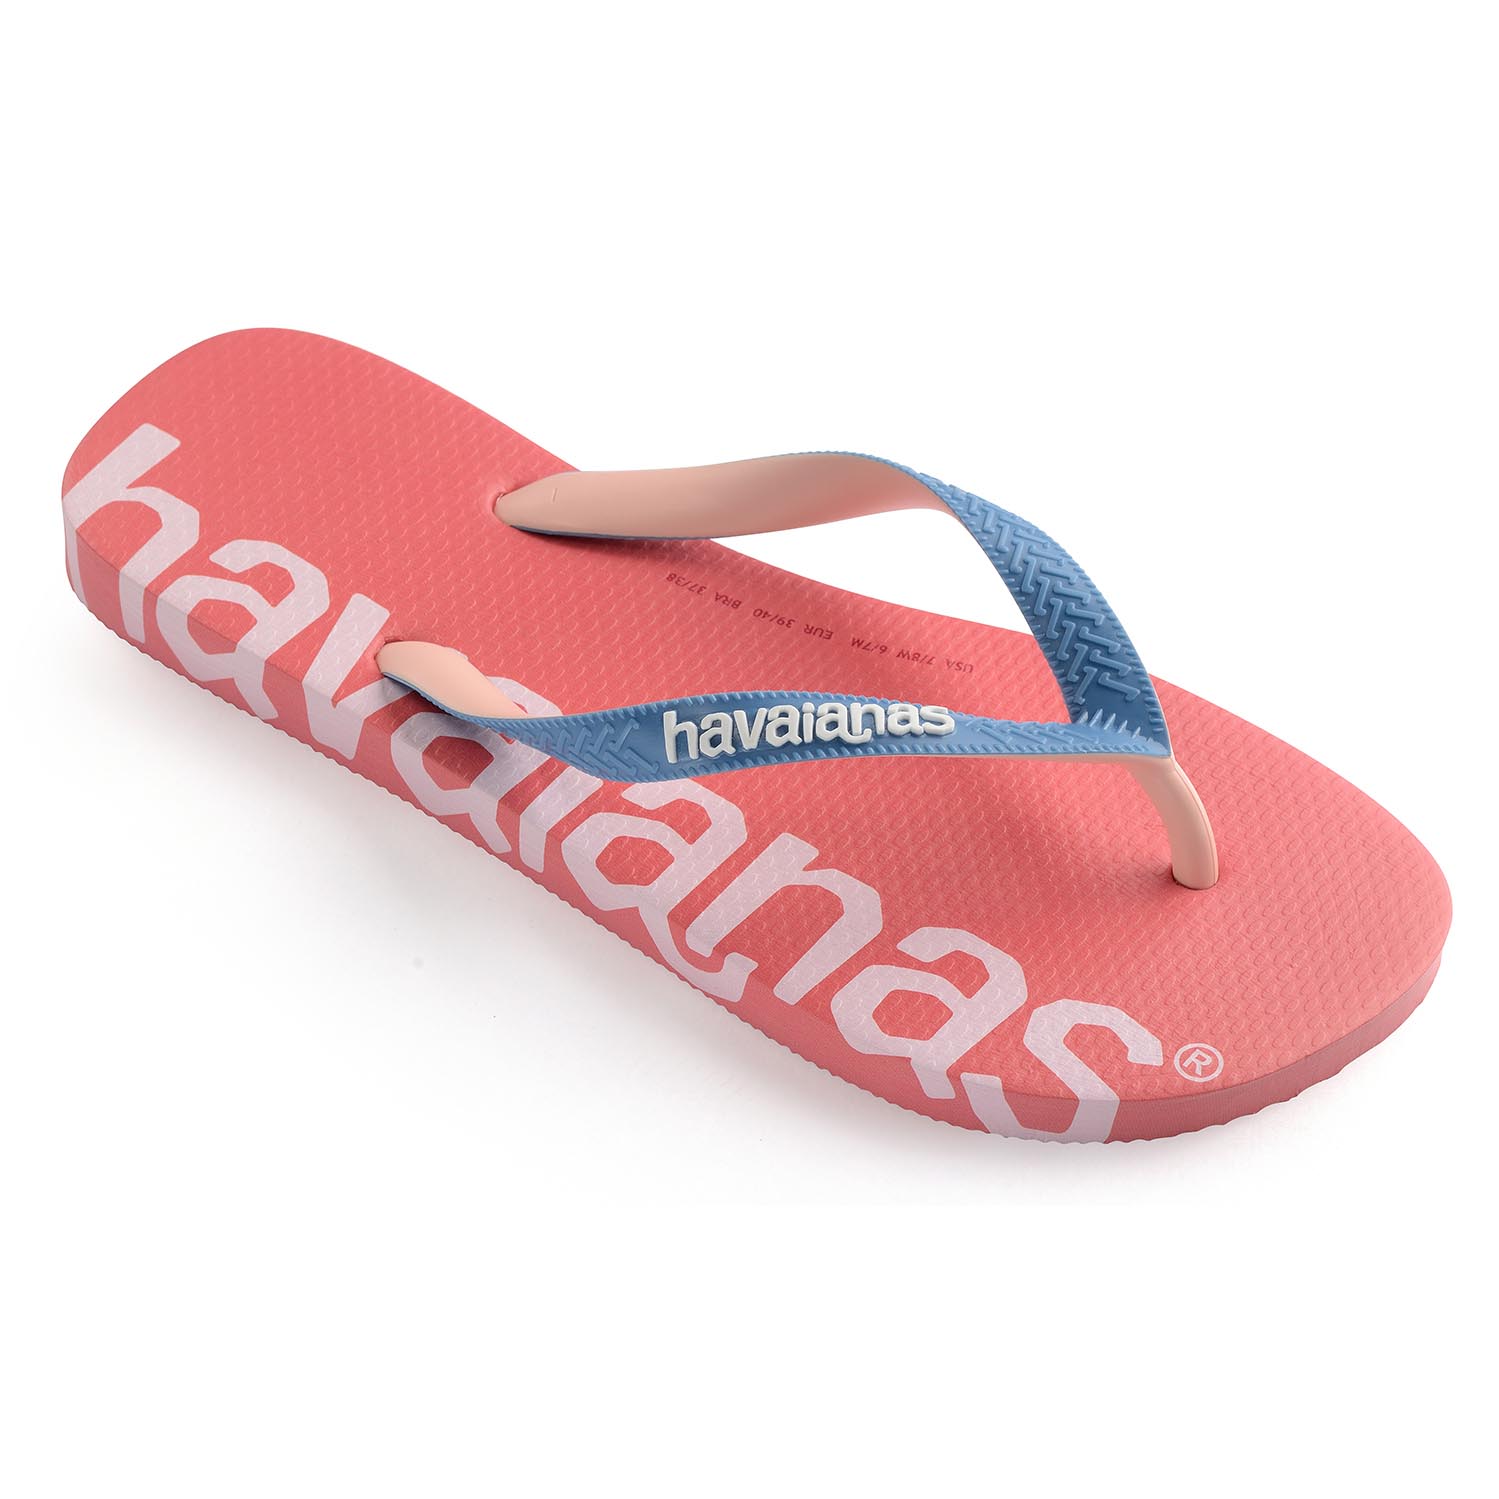 Havaianas Top Logomania Hightech Unisex Sandale Zehentrenner Badelatsche 4145727 Pink